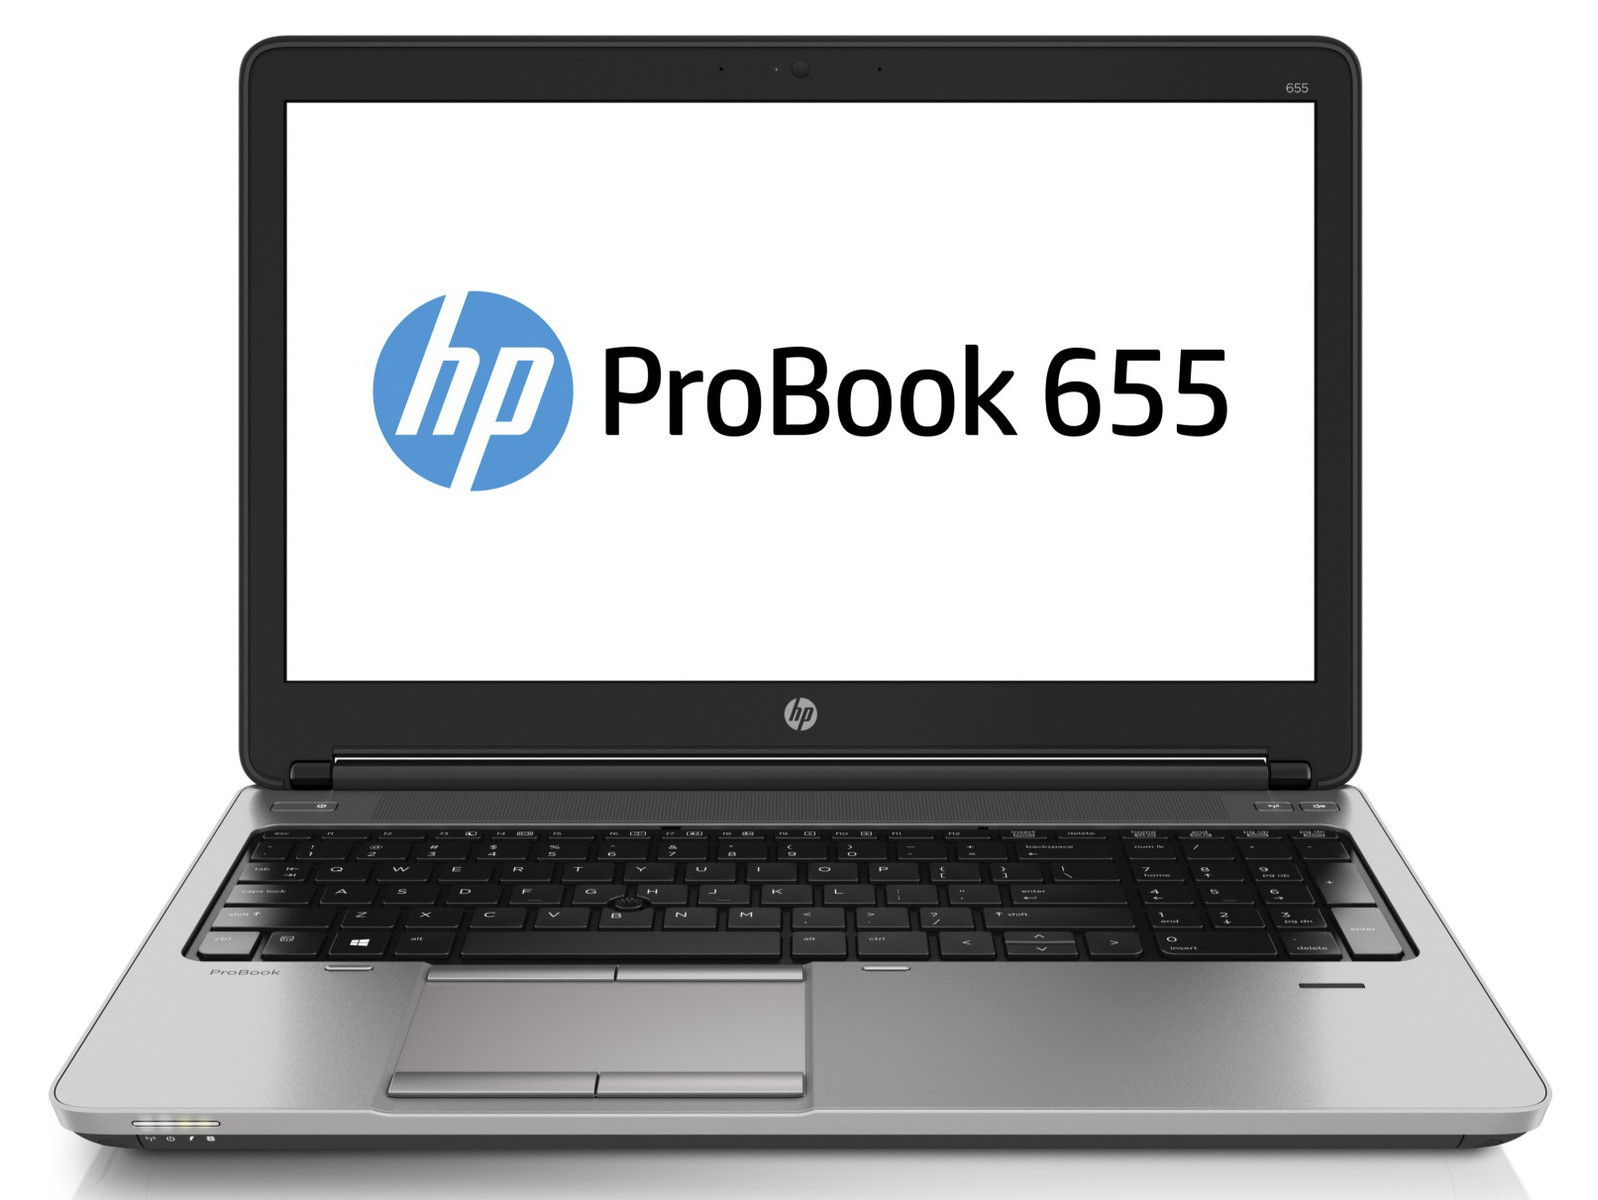 Laptop HP ProBook 655 G1, AMD A10-5750M 2.50GHz, 4GB DDR3, 320GB SATA, DVD-RW, 15.6 Inch